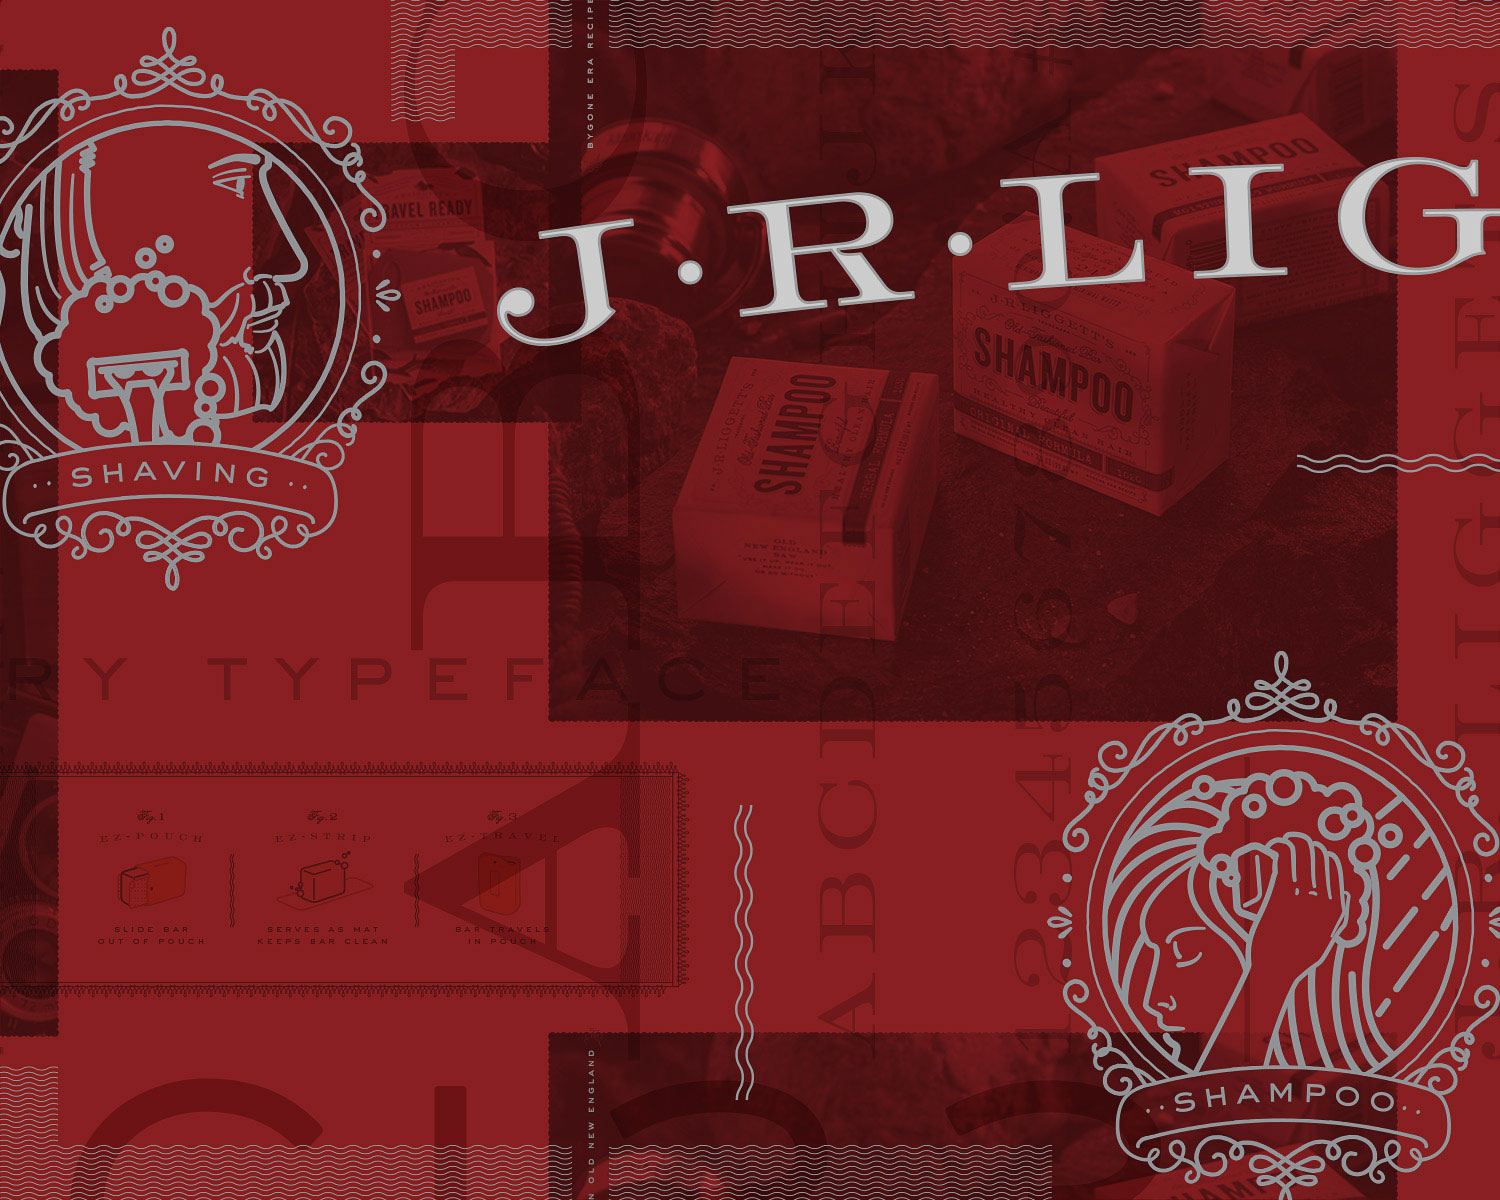 J.R. Liggett's: Brand Development & Packaging Design